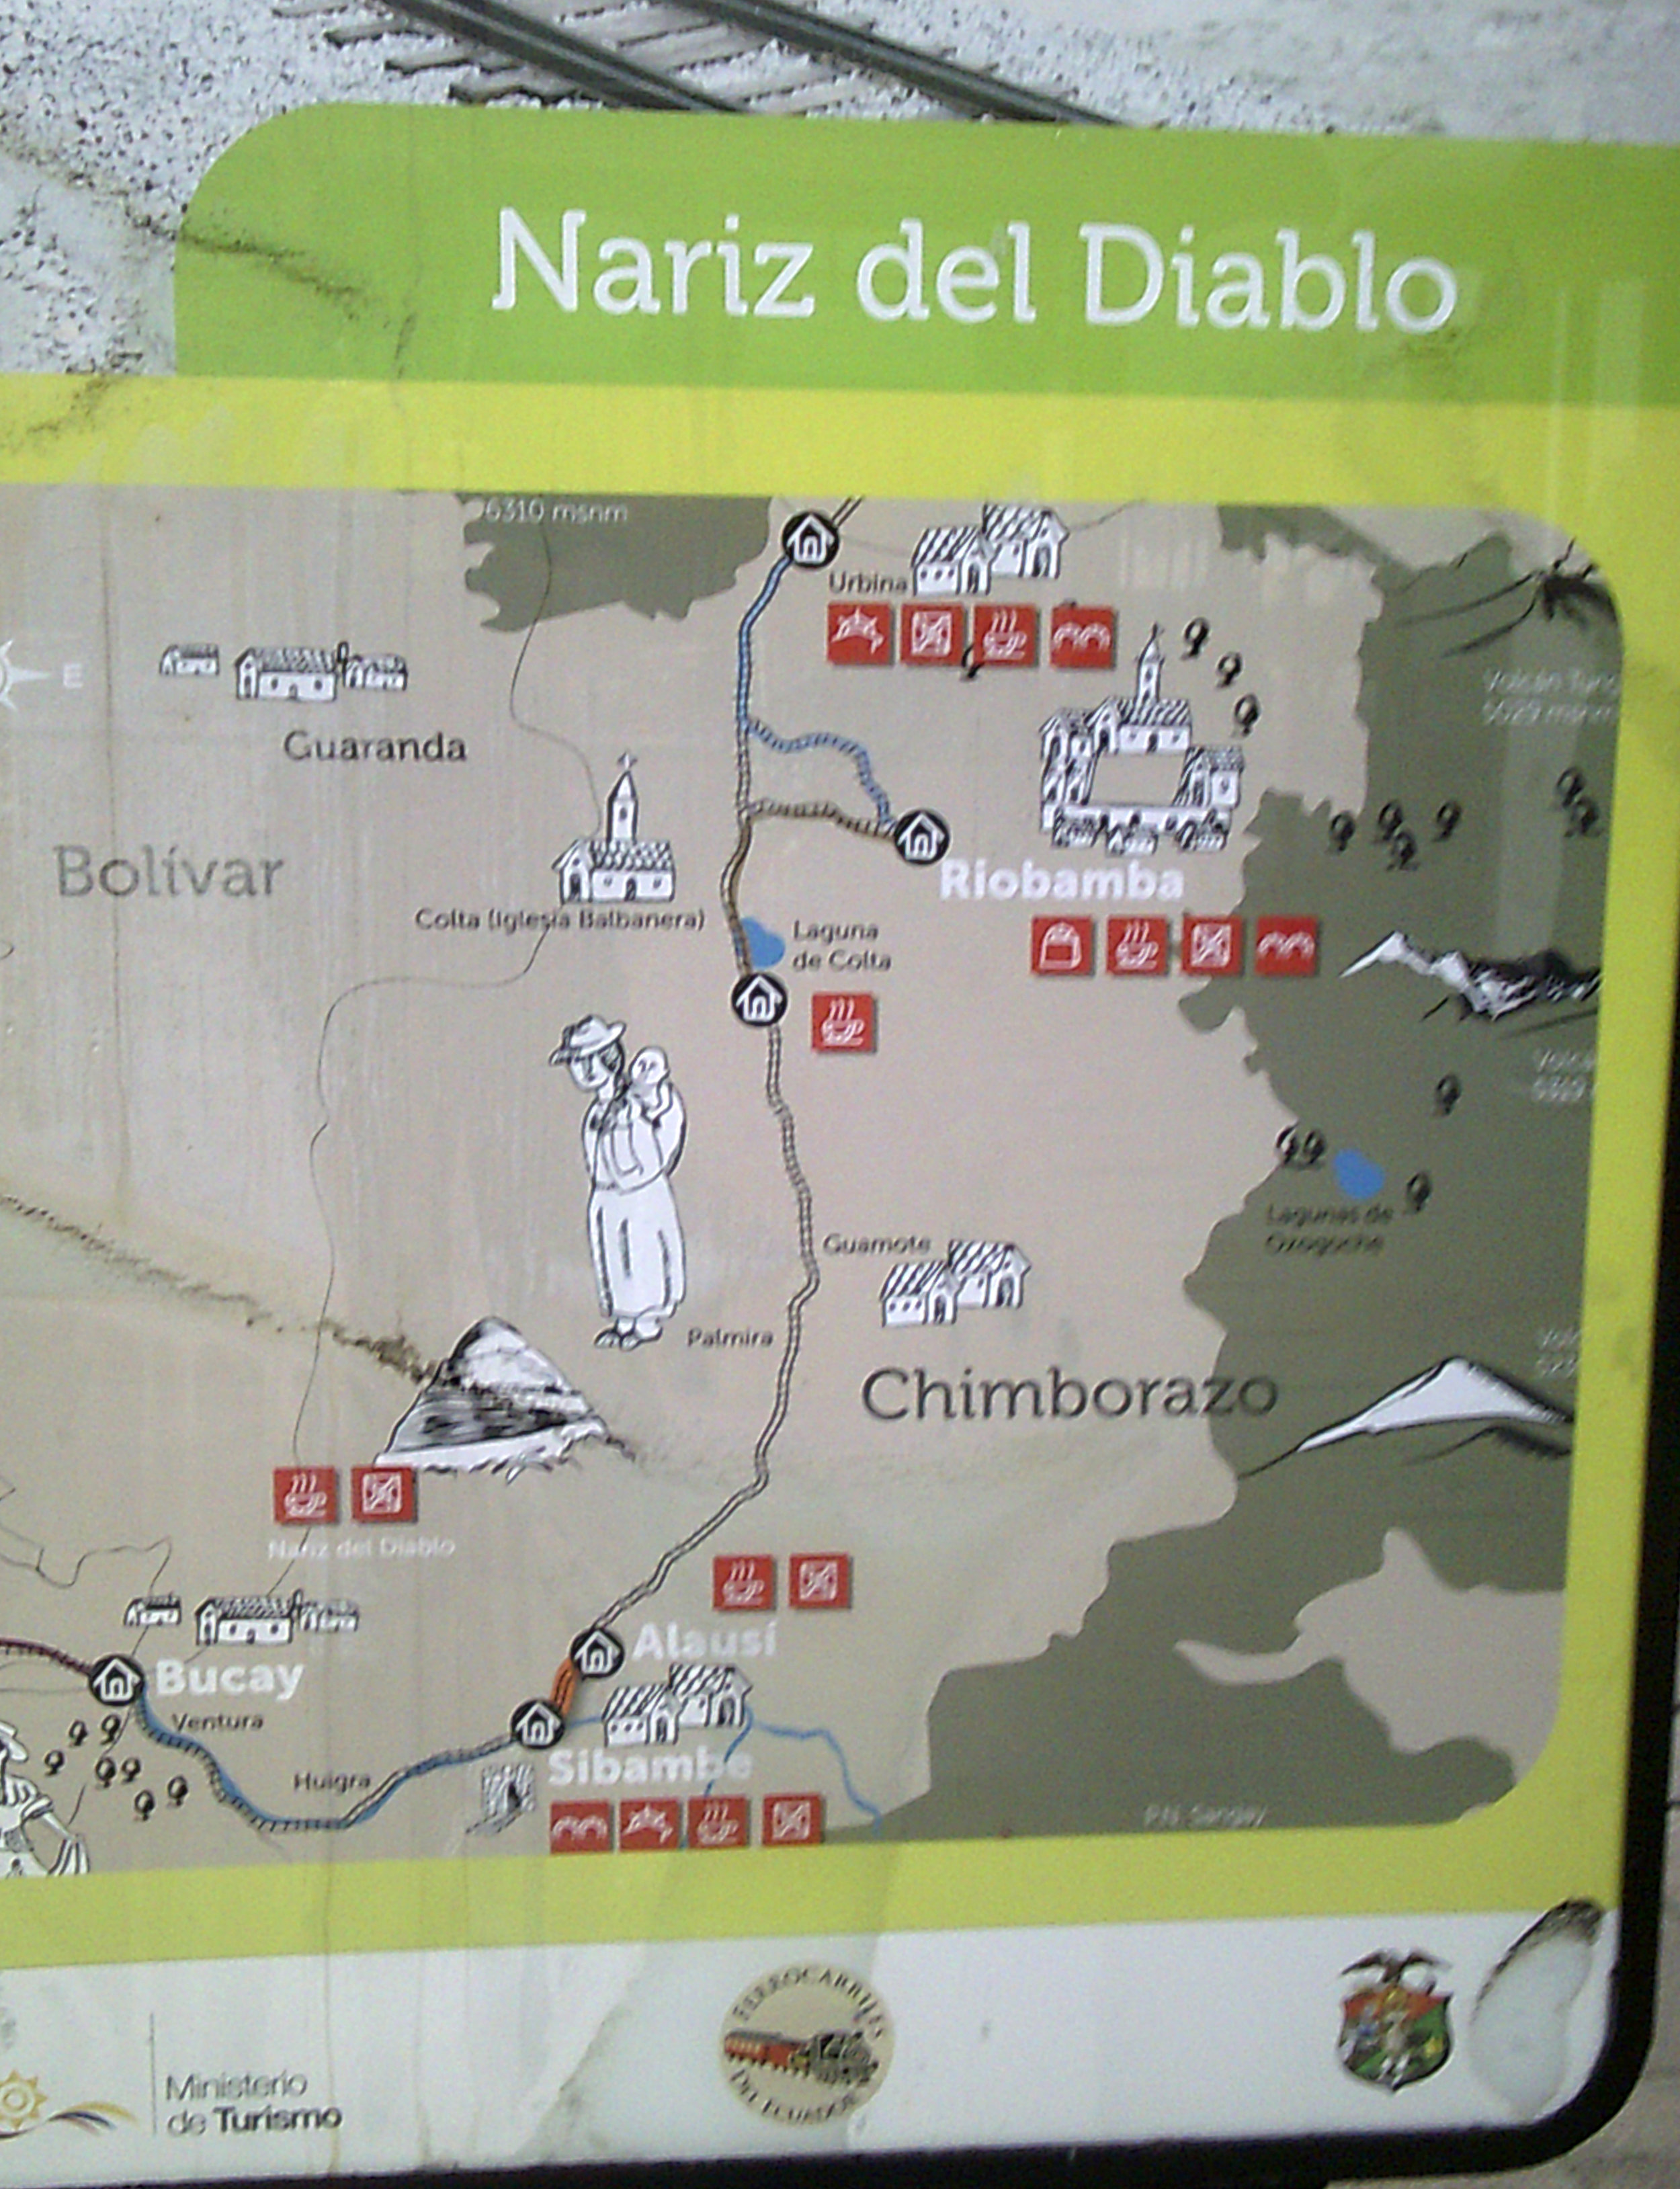 Nariz del Diablo map.jpg